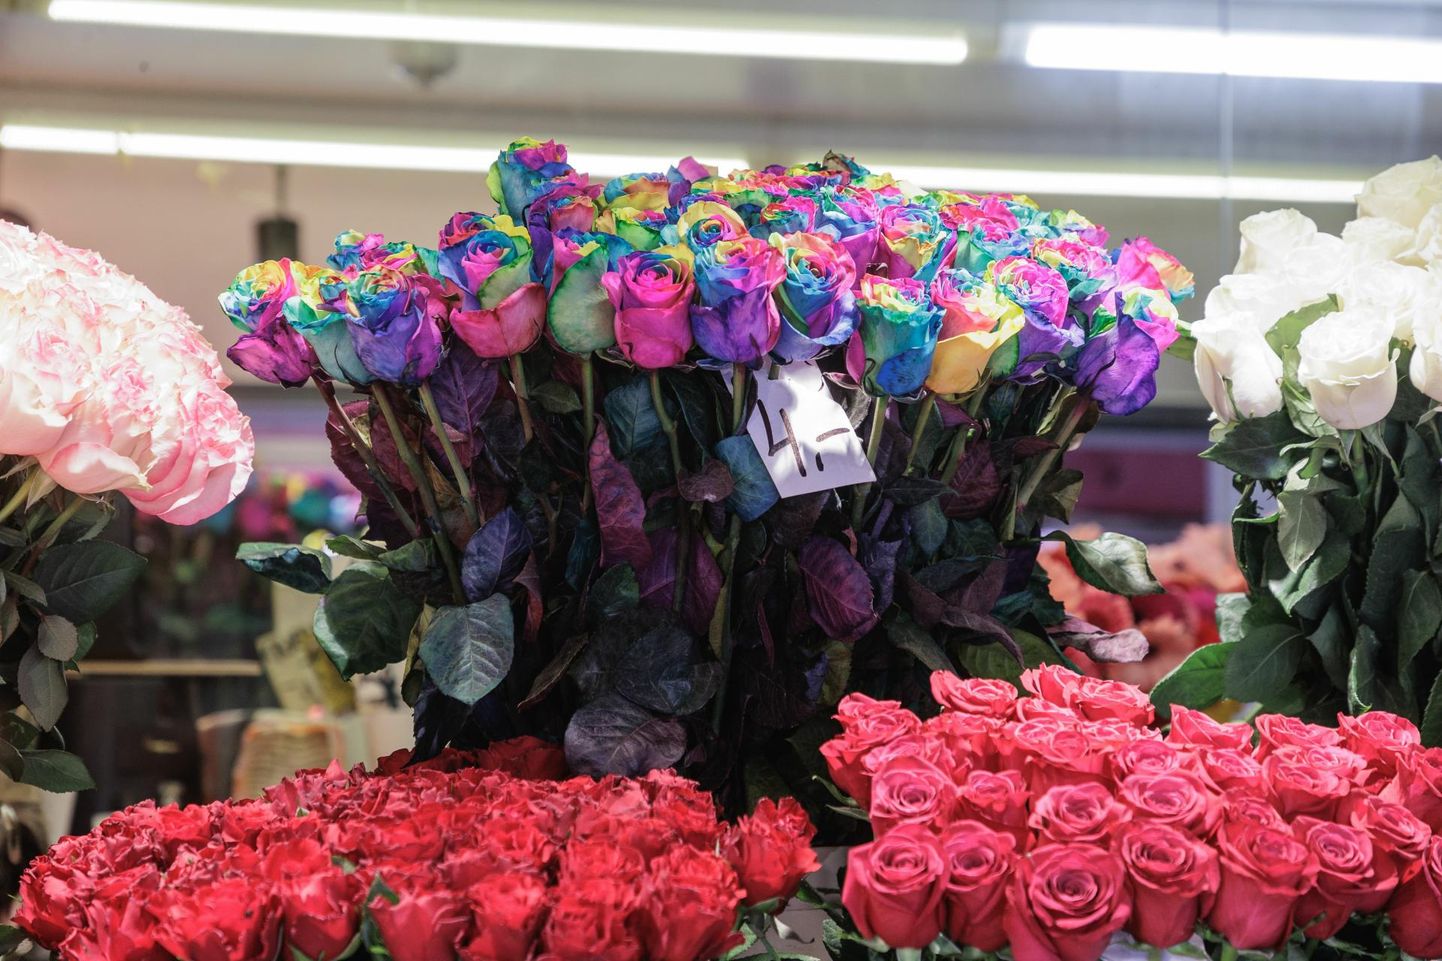 Lisaks odavamatele lilledele eelistavad ostjad ka alati kindla peale minekut ehk rooside ostmist. Valikut oli väga palju ja nii võis Viru tänavalt leida ka taevakarva roose.